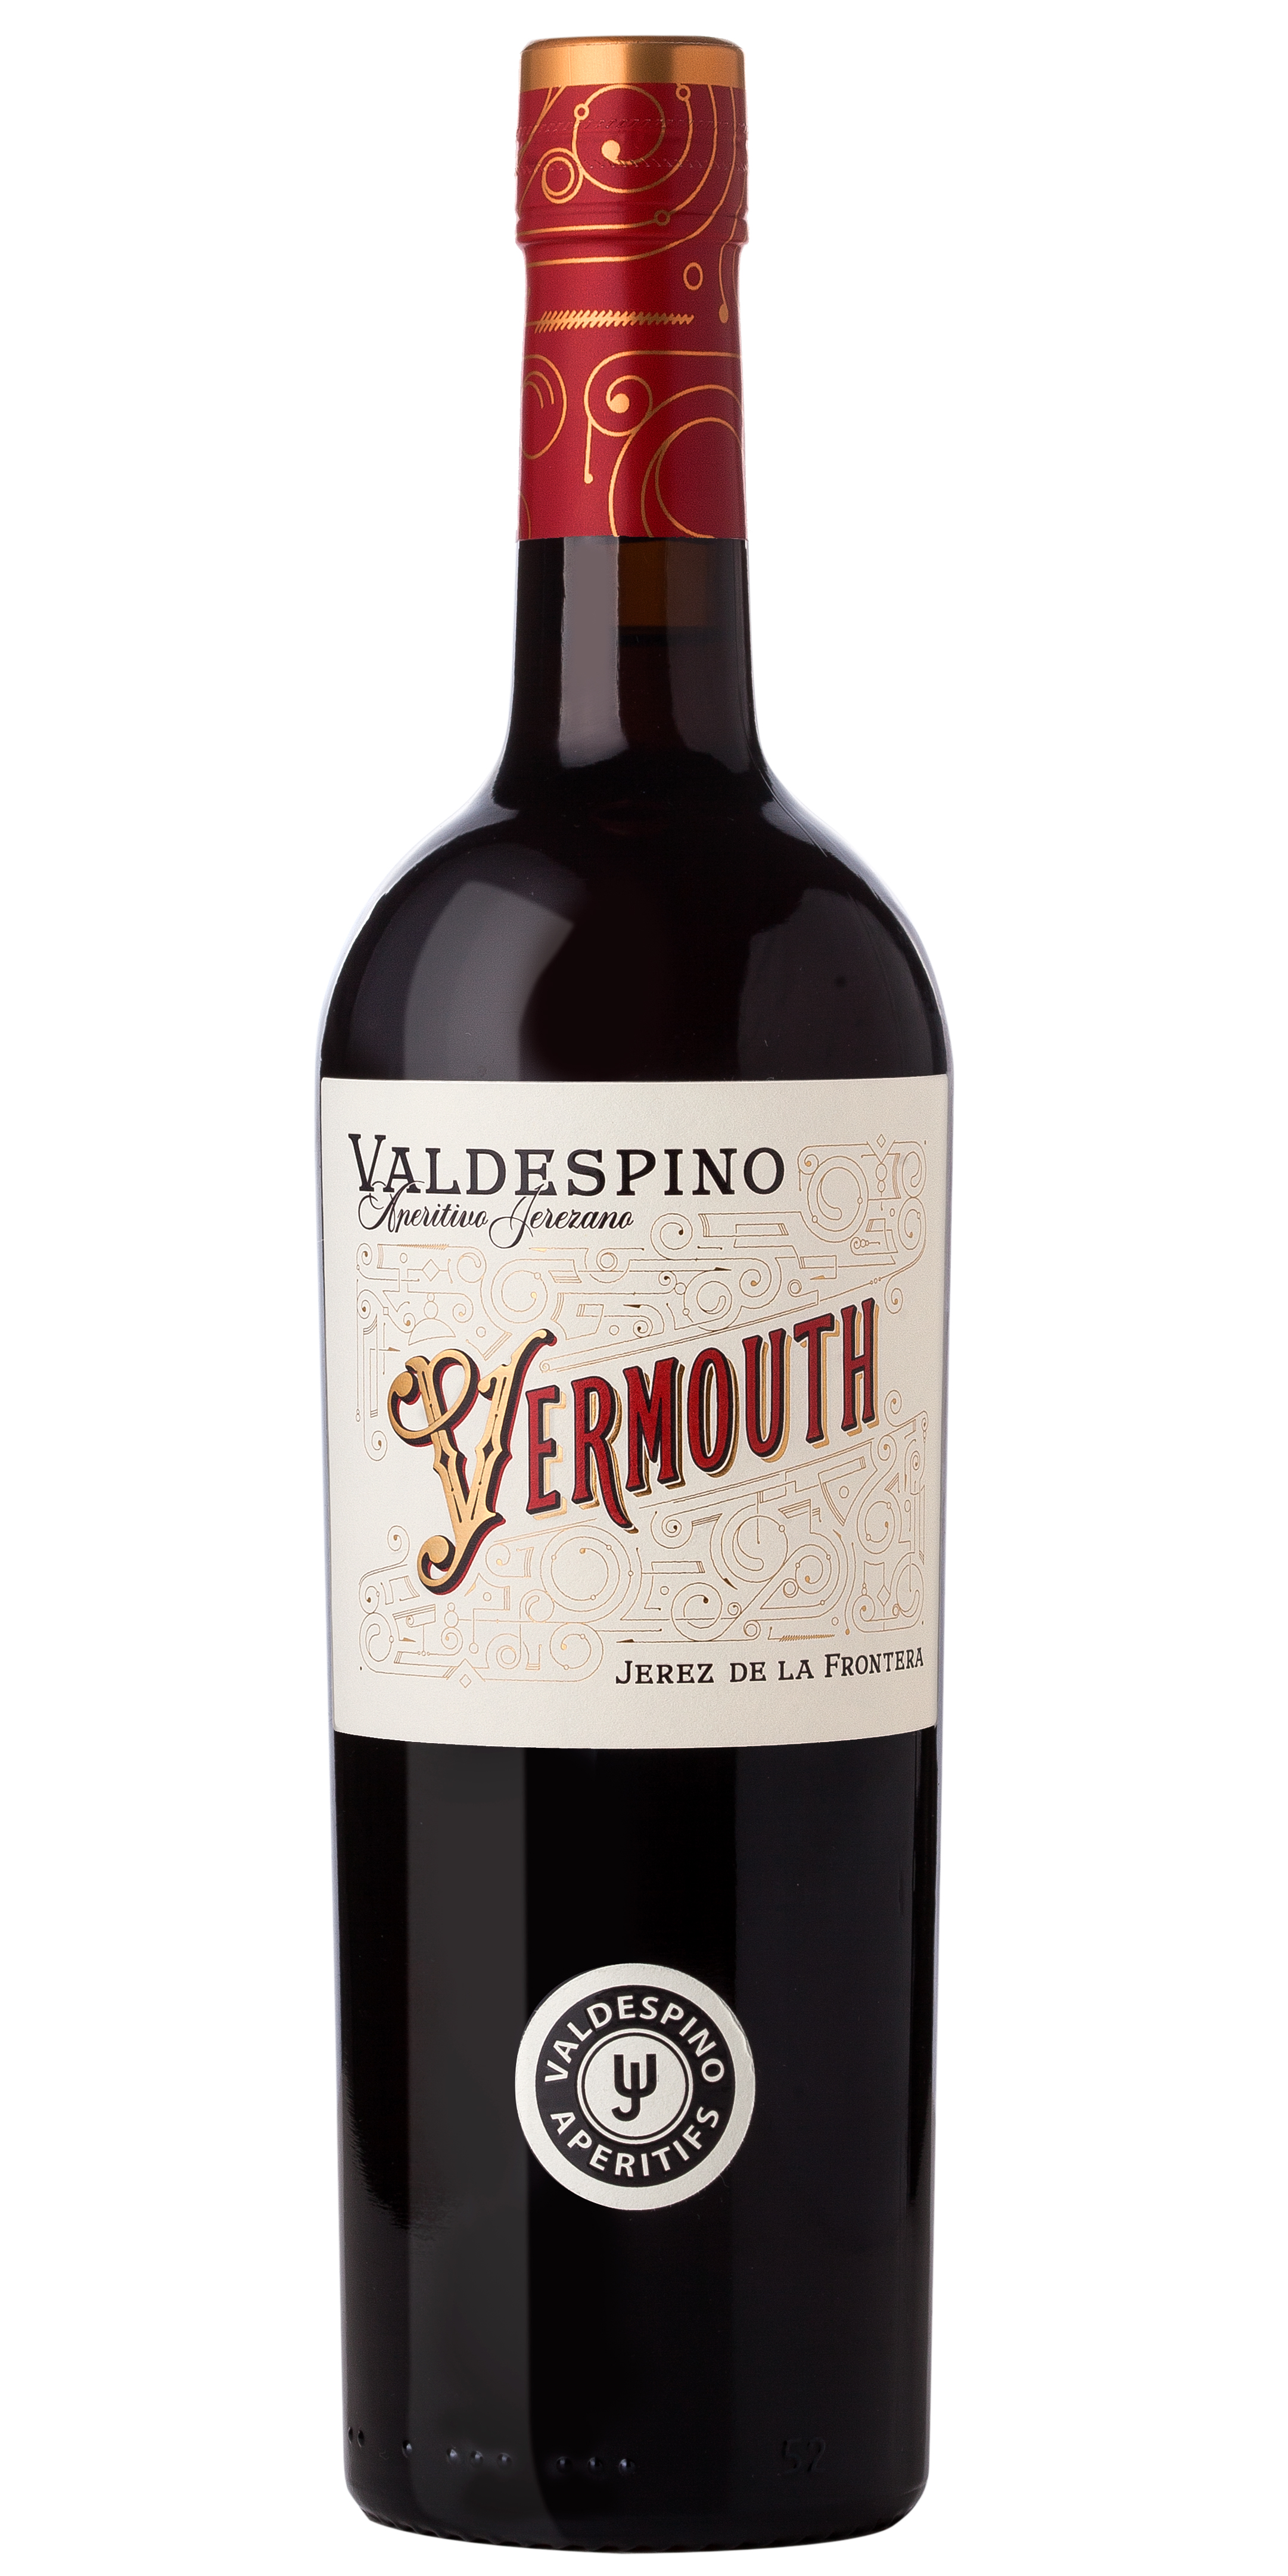 Valdespino Vermouth 